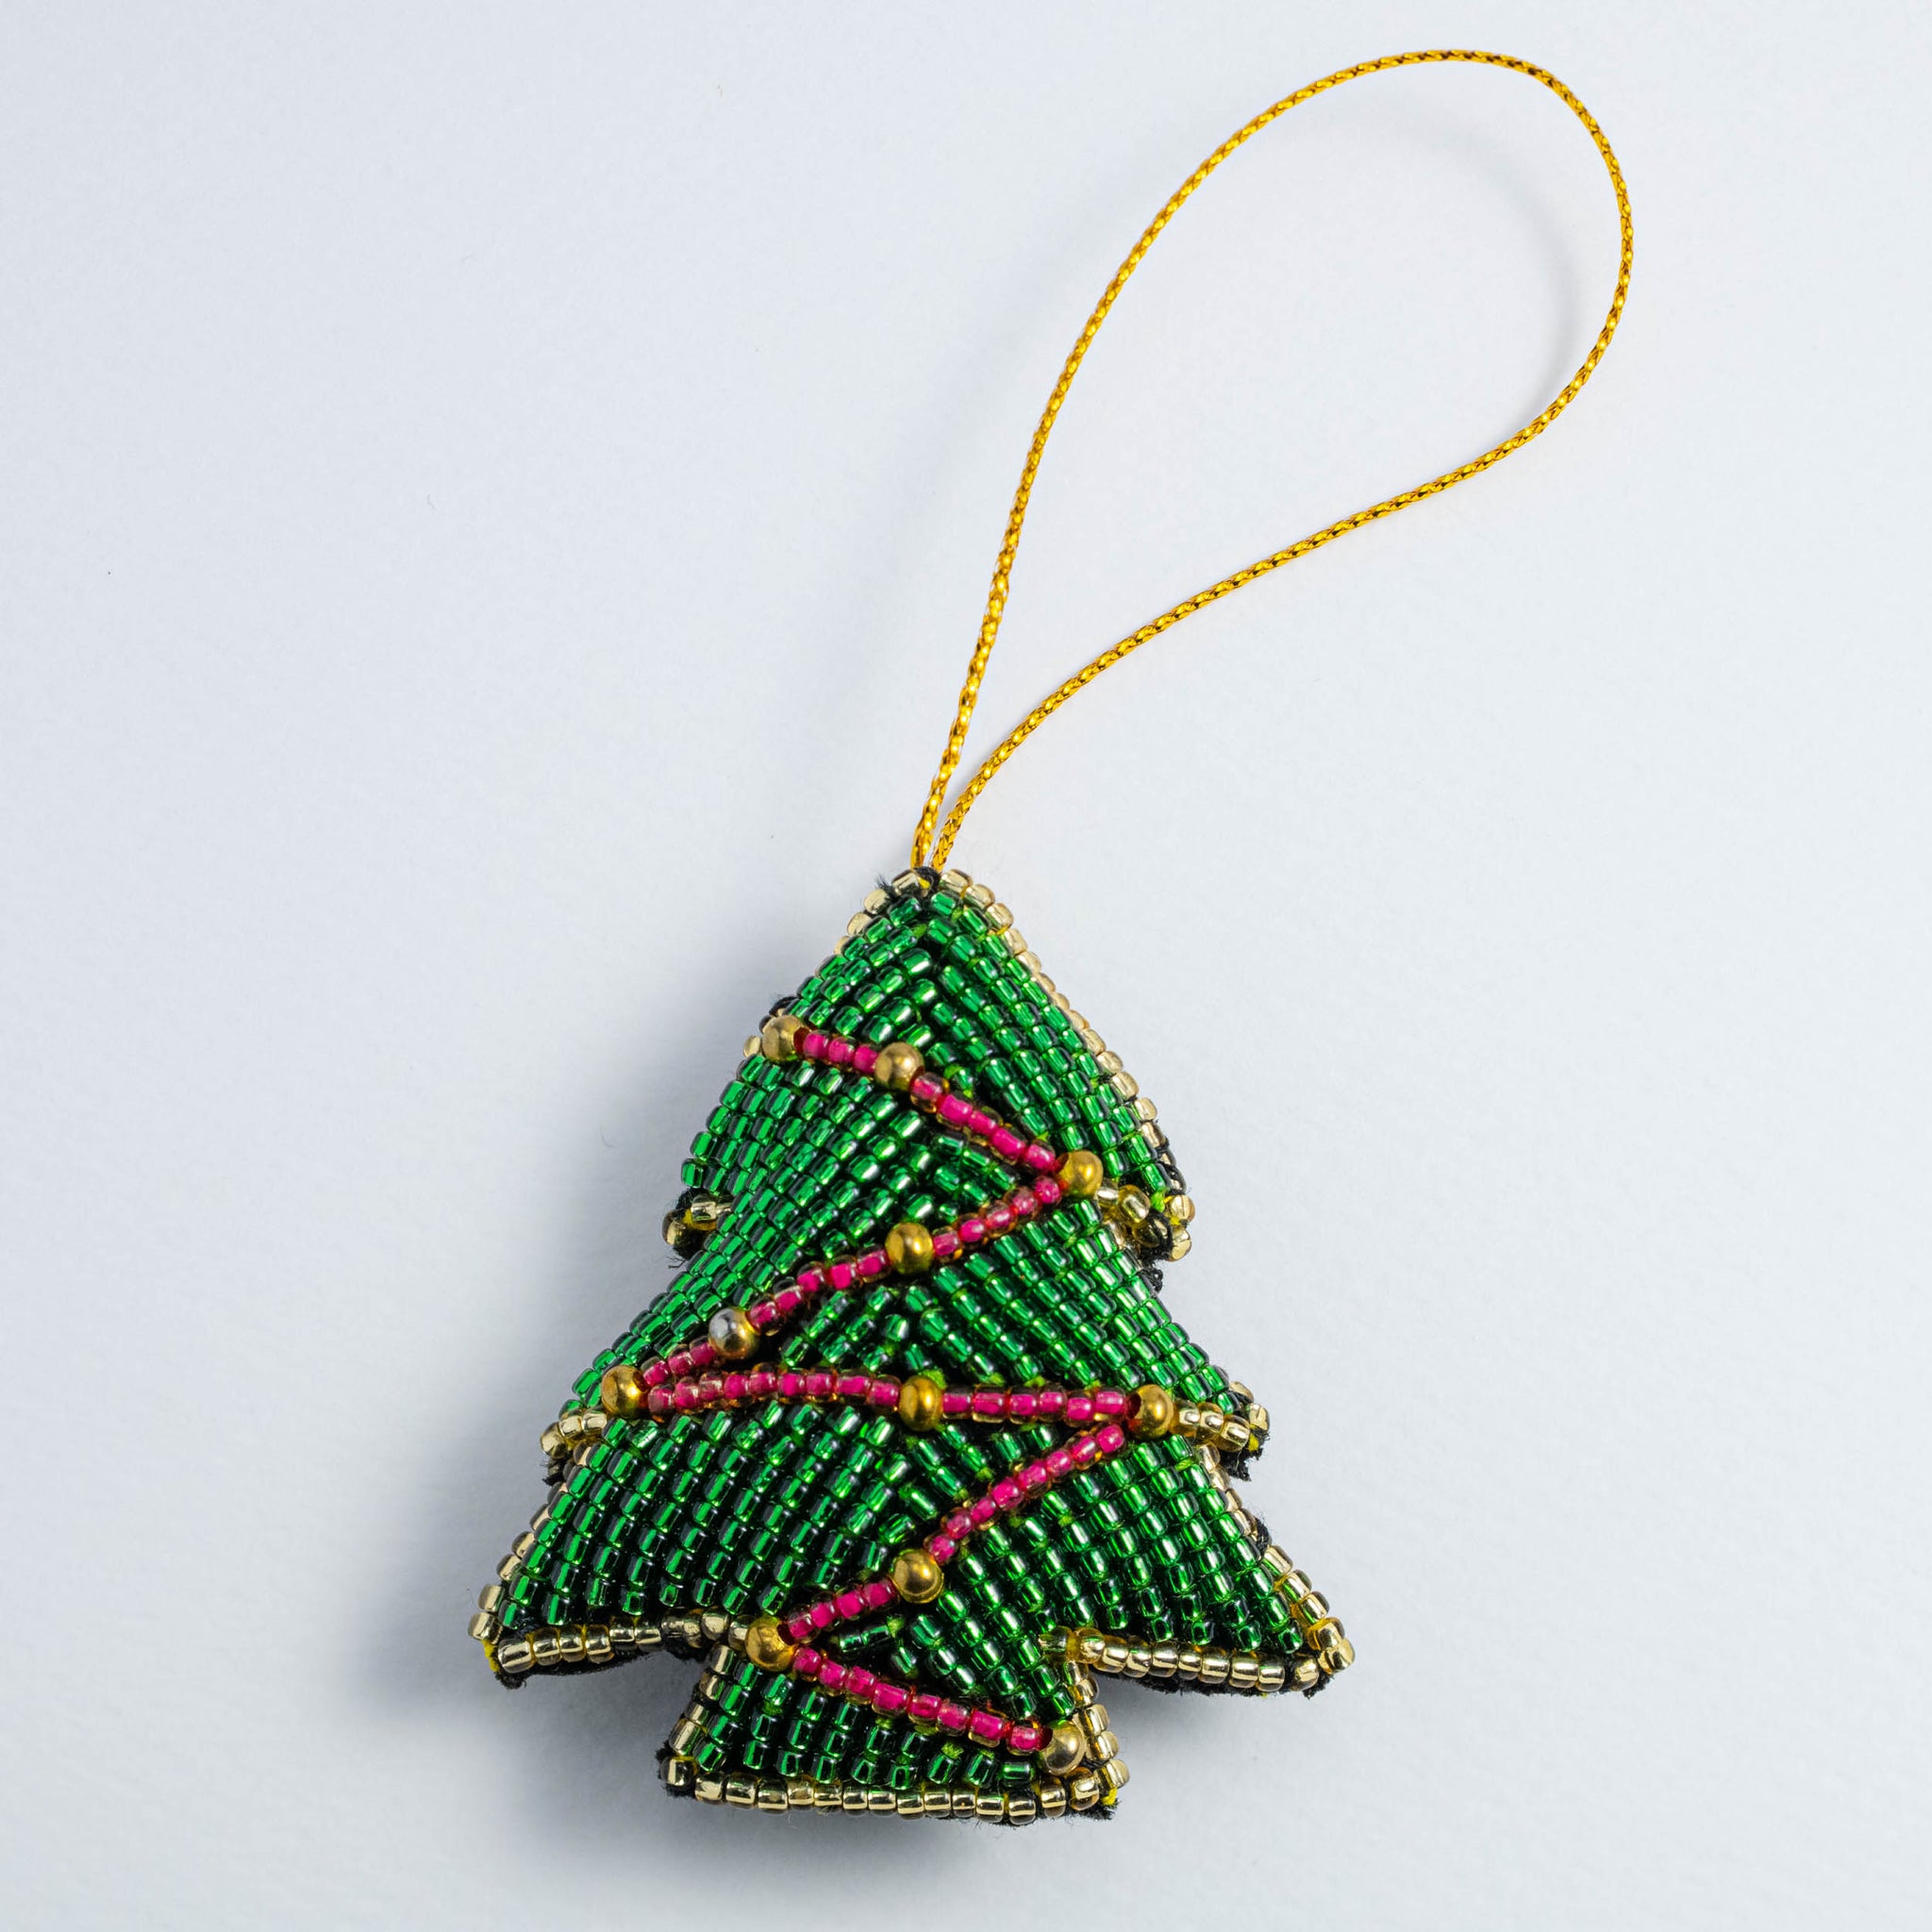 Charming Christmas Tree Ornament